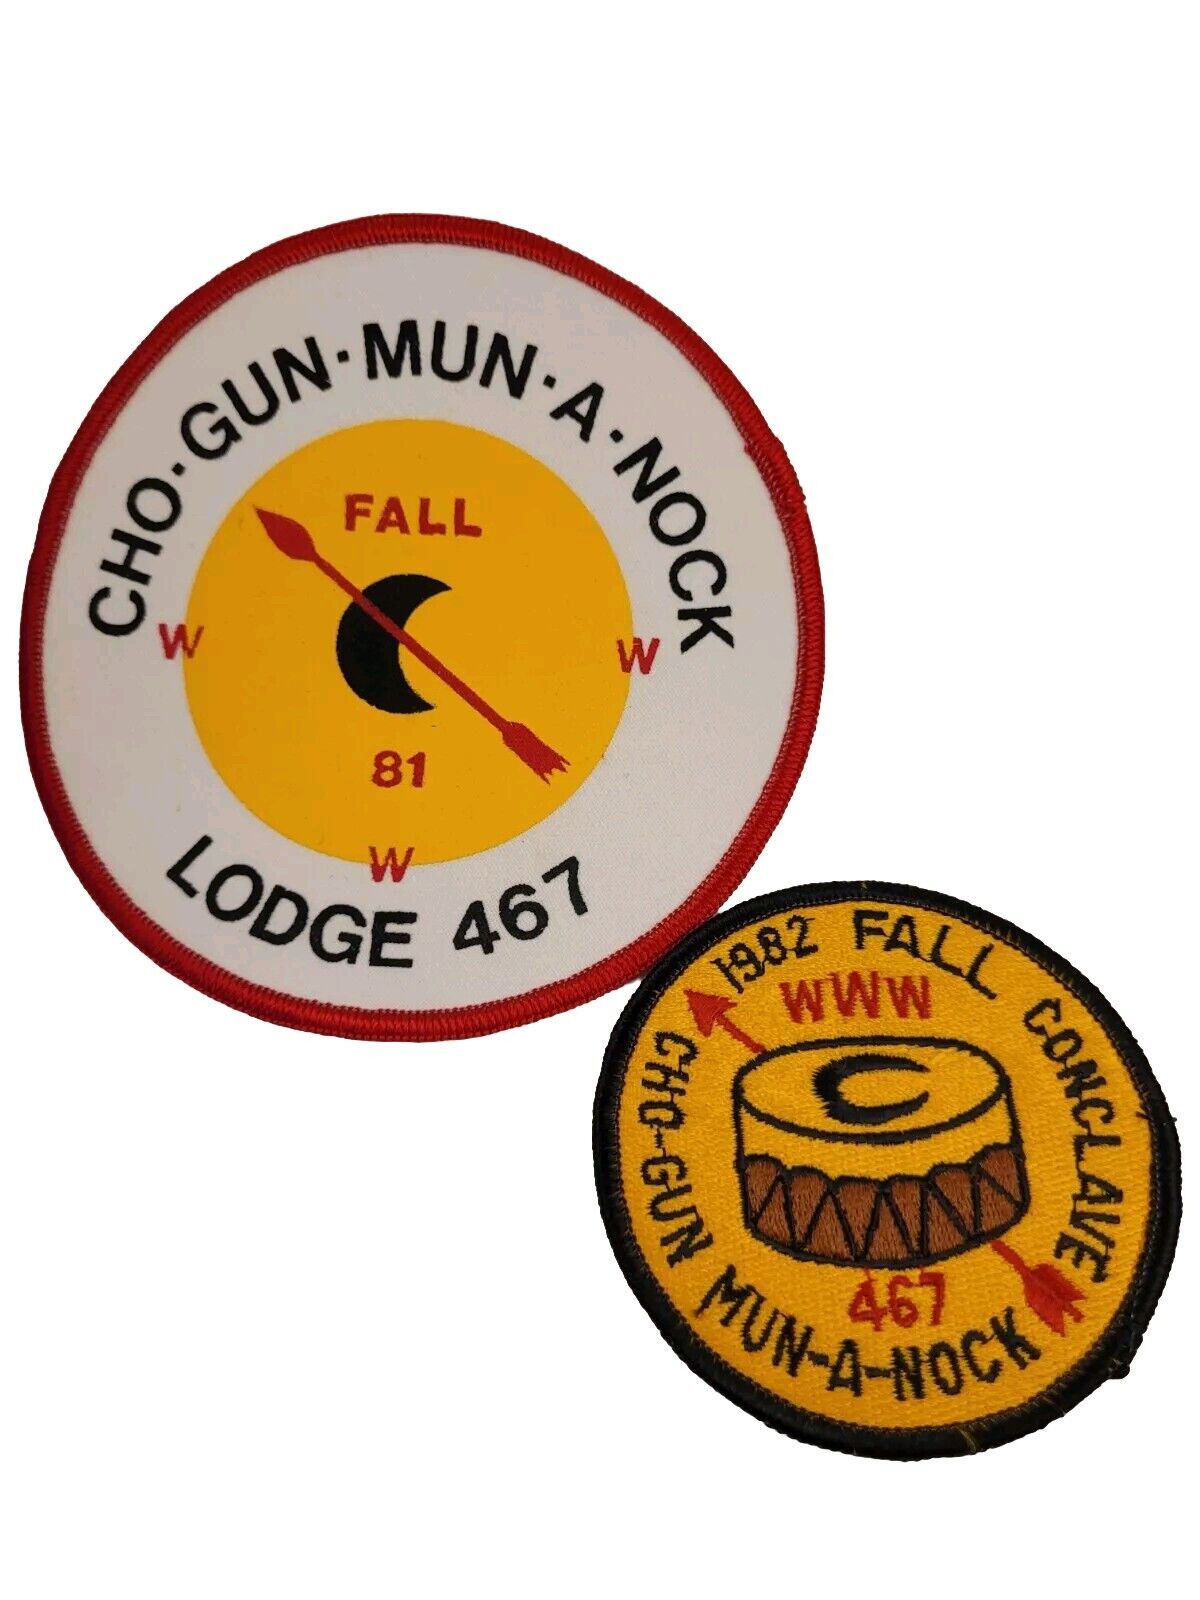 Boy Scout Patch Set of vintage 1981 and 1982 Cho-gun-mun-a-nock Lodge 467 Iowa 